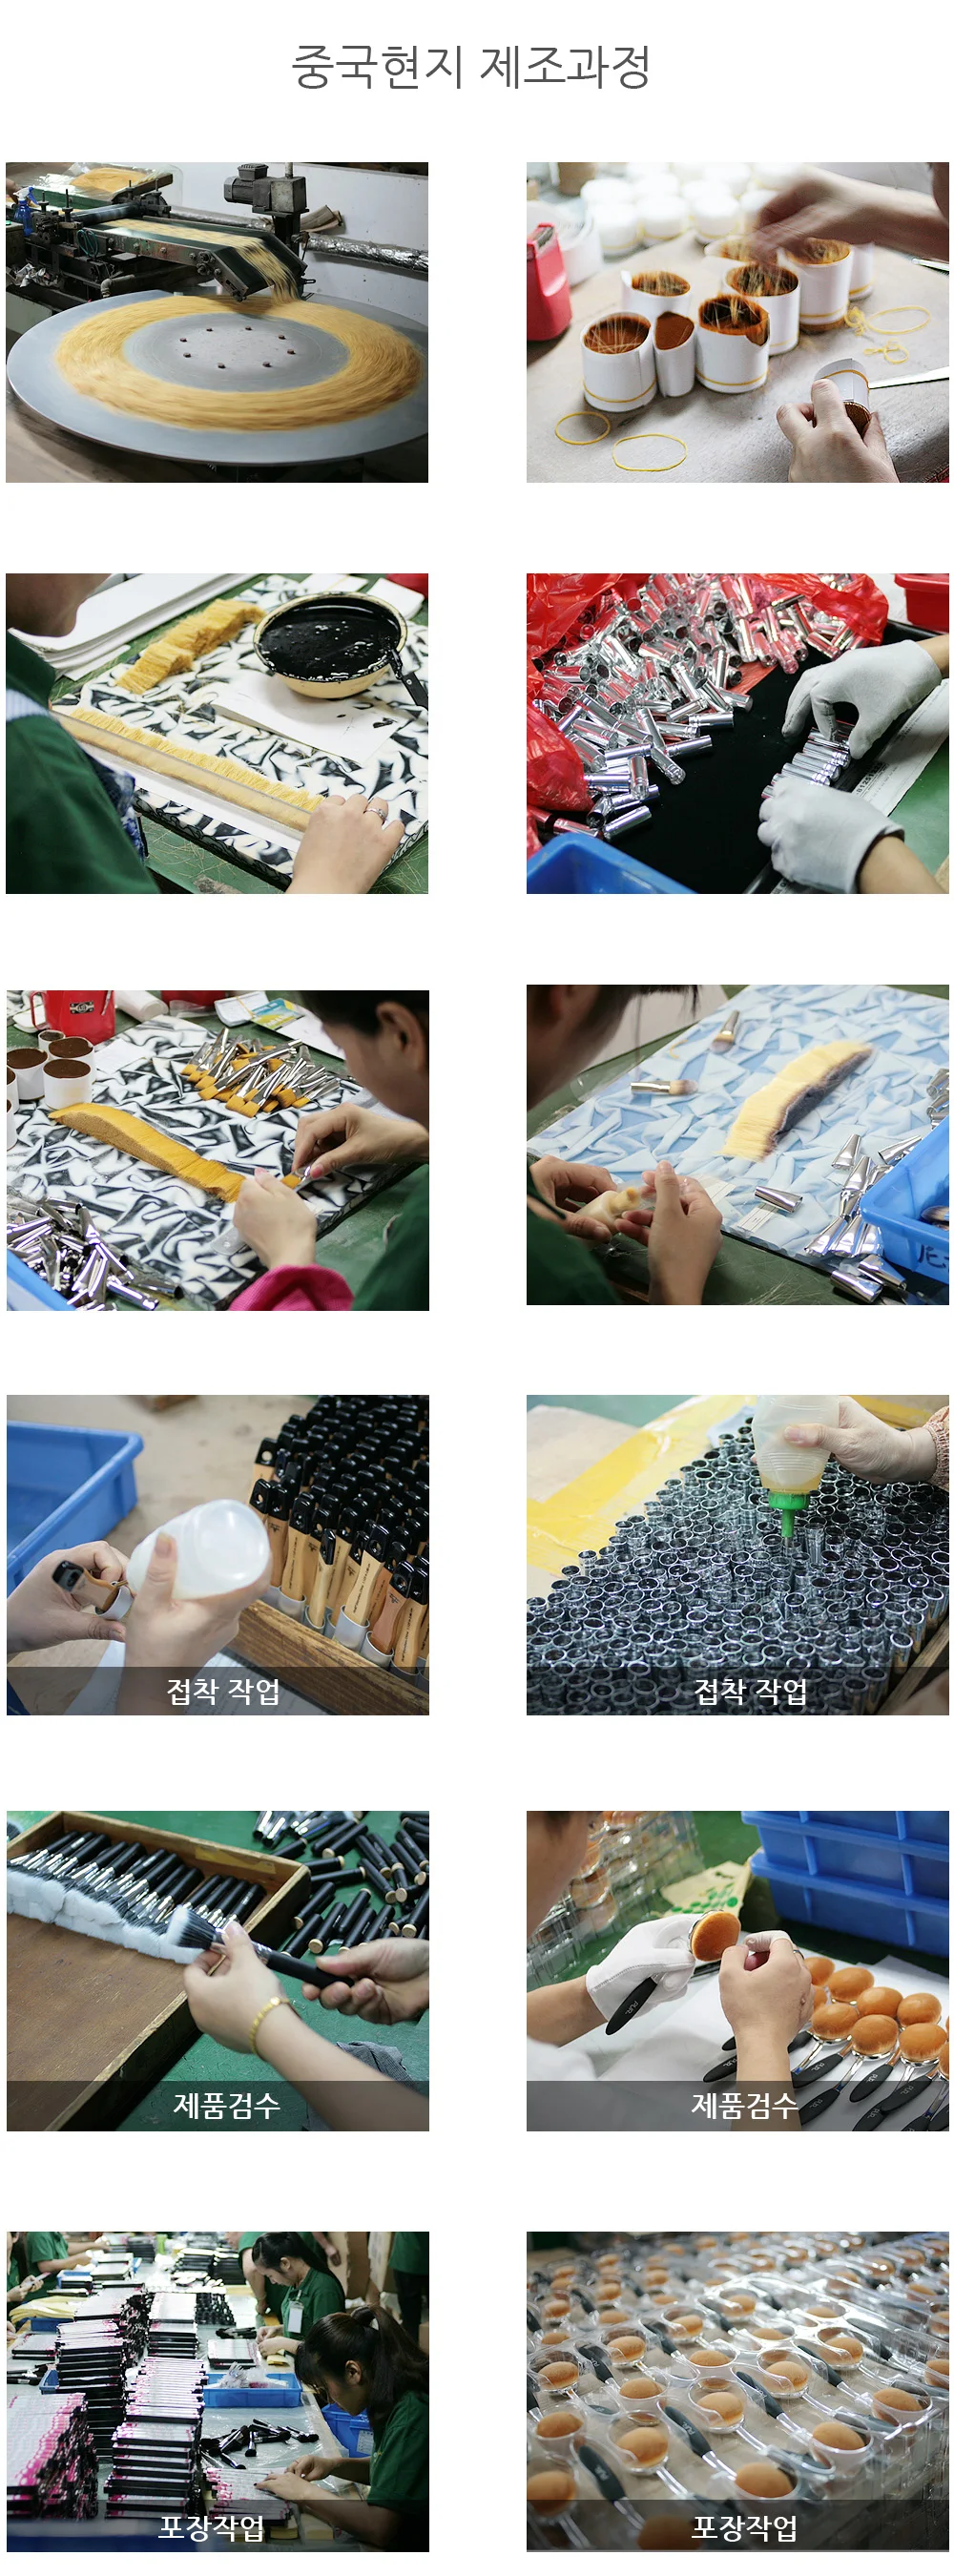 2012FB Корея Импорт синтетические волосы Треугольник Деревянный Ручка алюминиевый наконечник акрил и масло кисточки